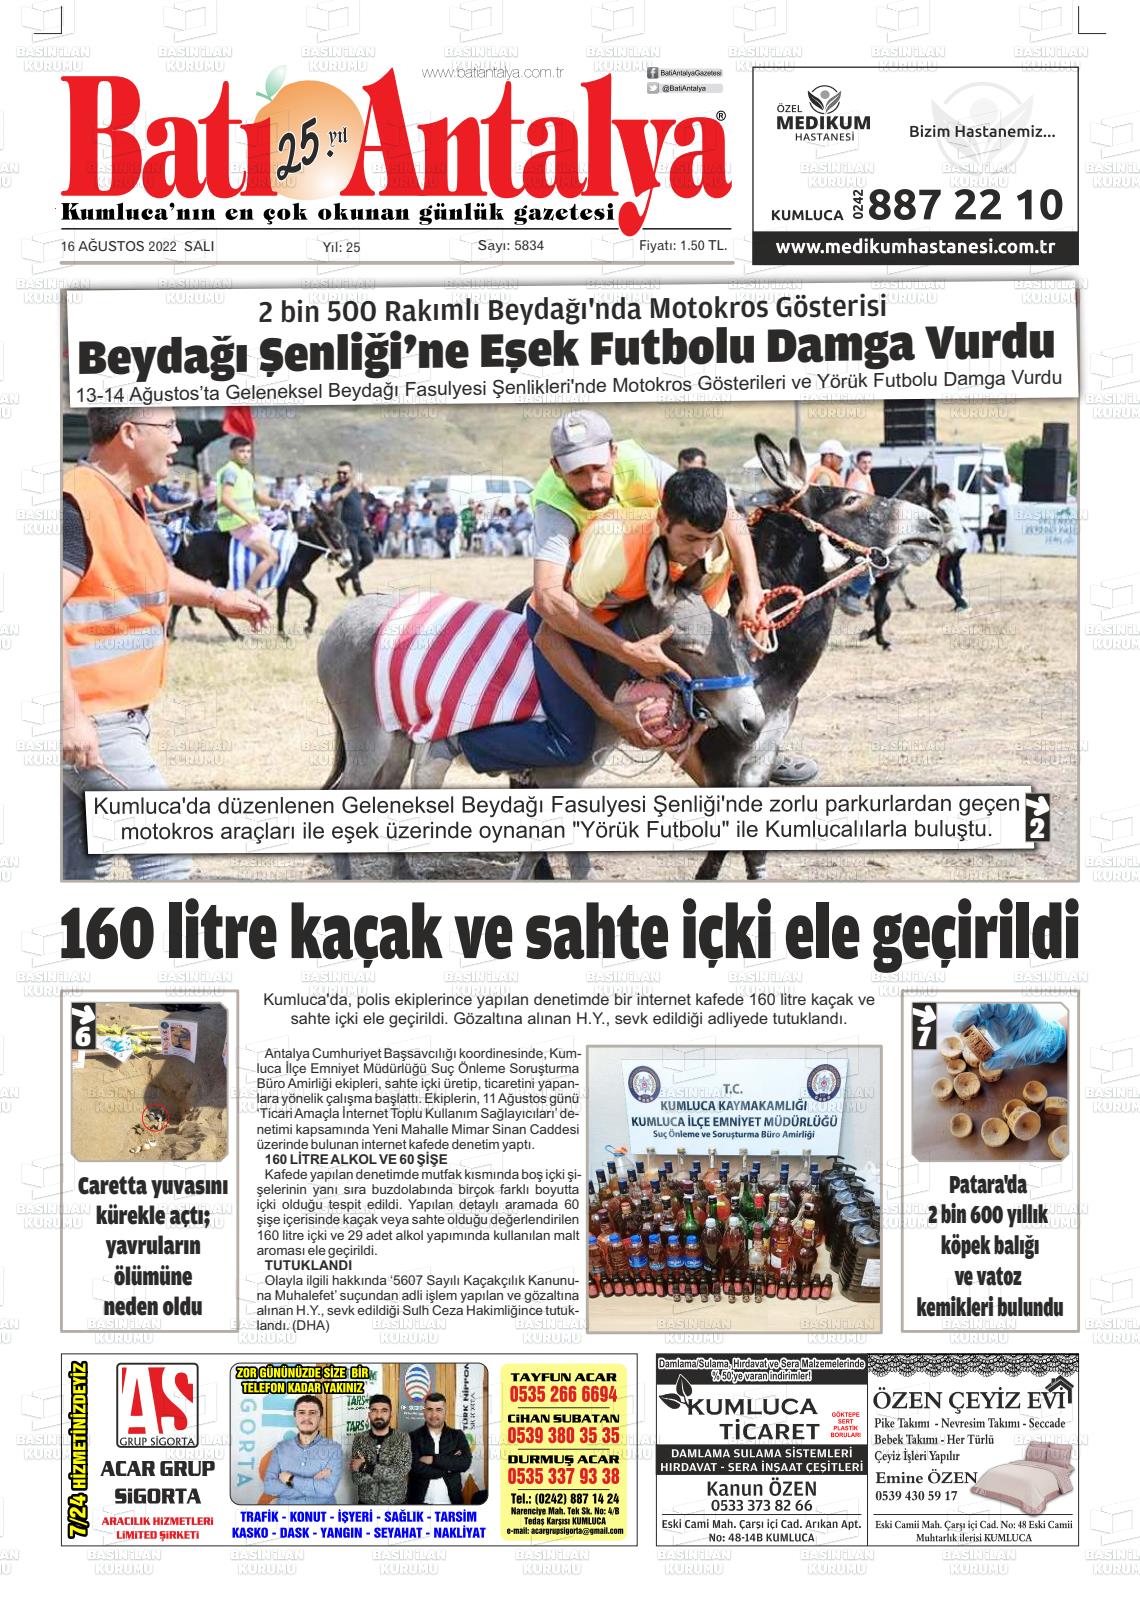 16 Ağustos 2022 Batı Antalya Gazete Manşeti